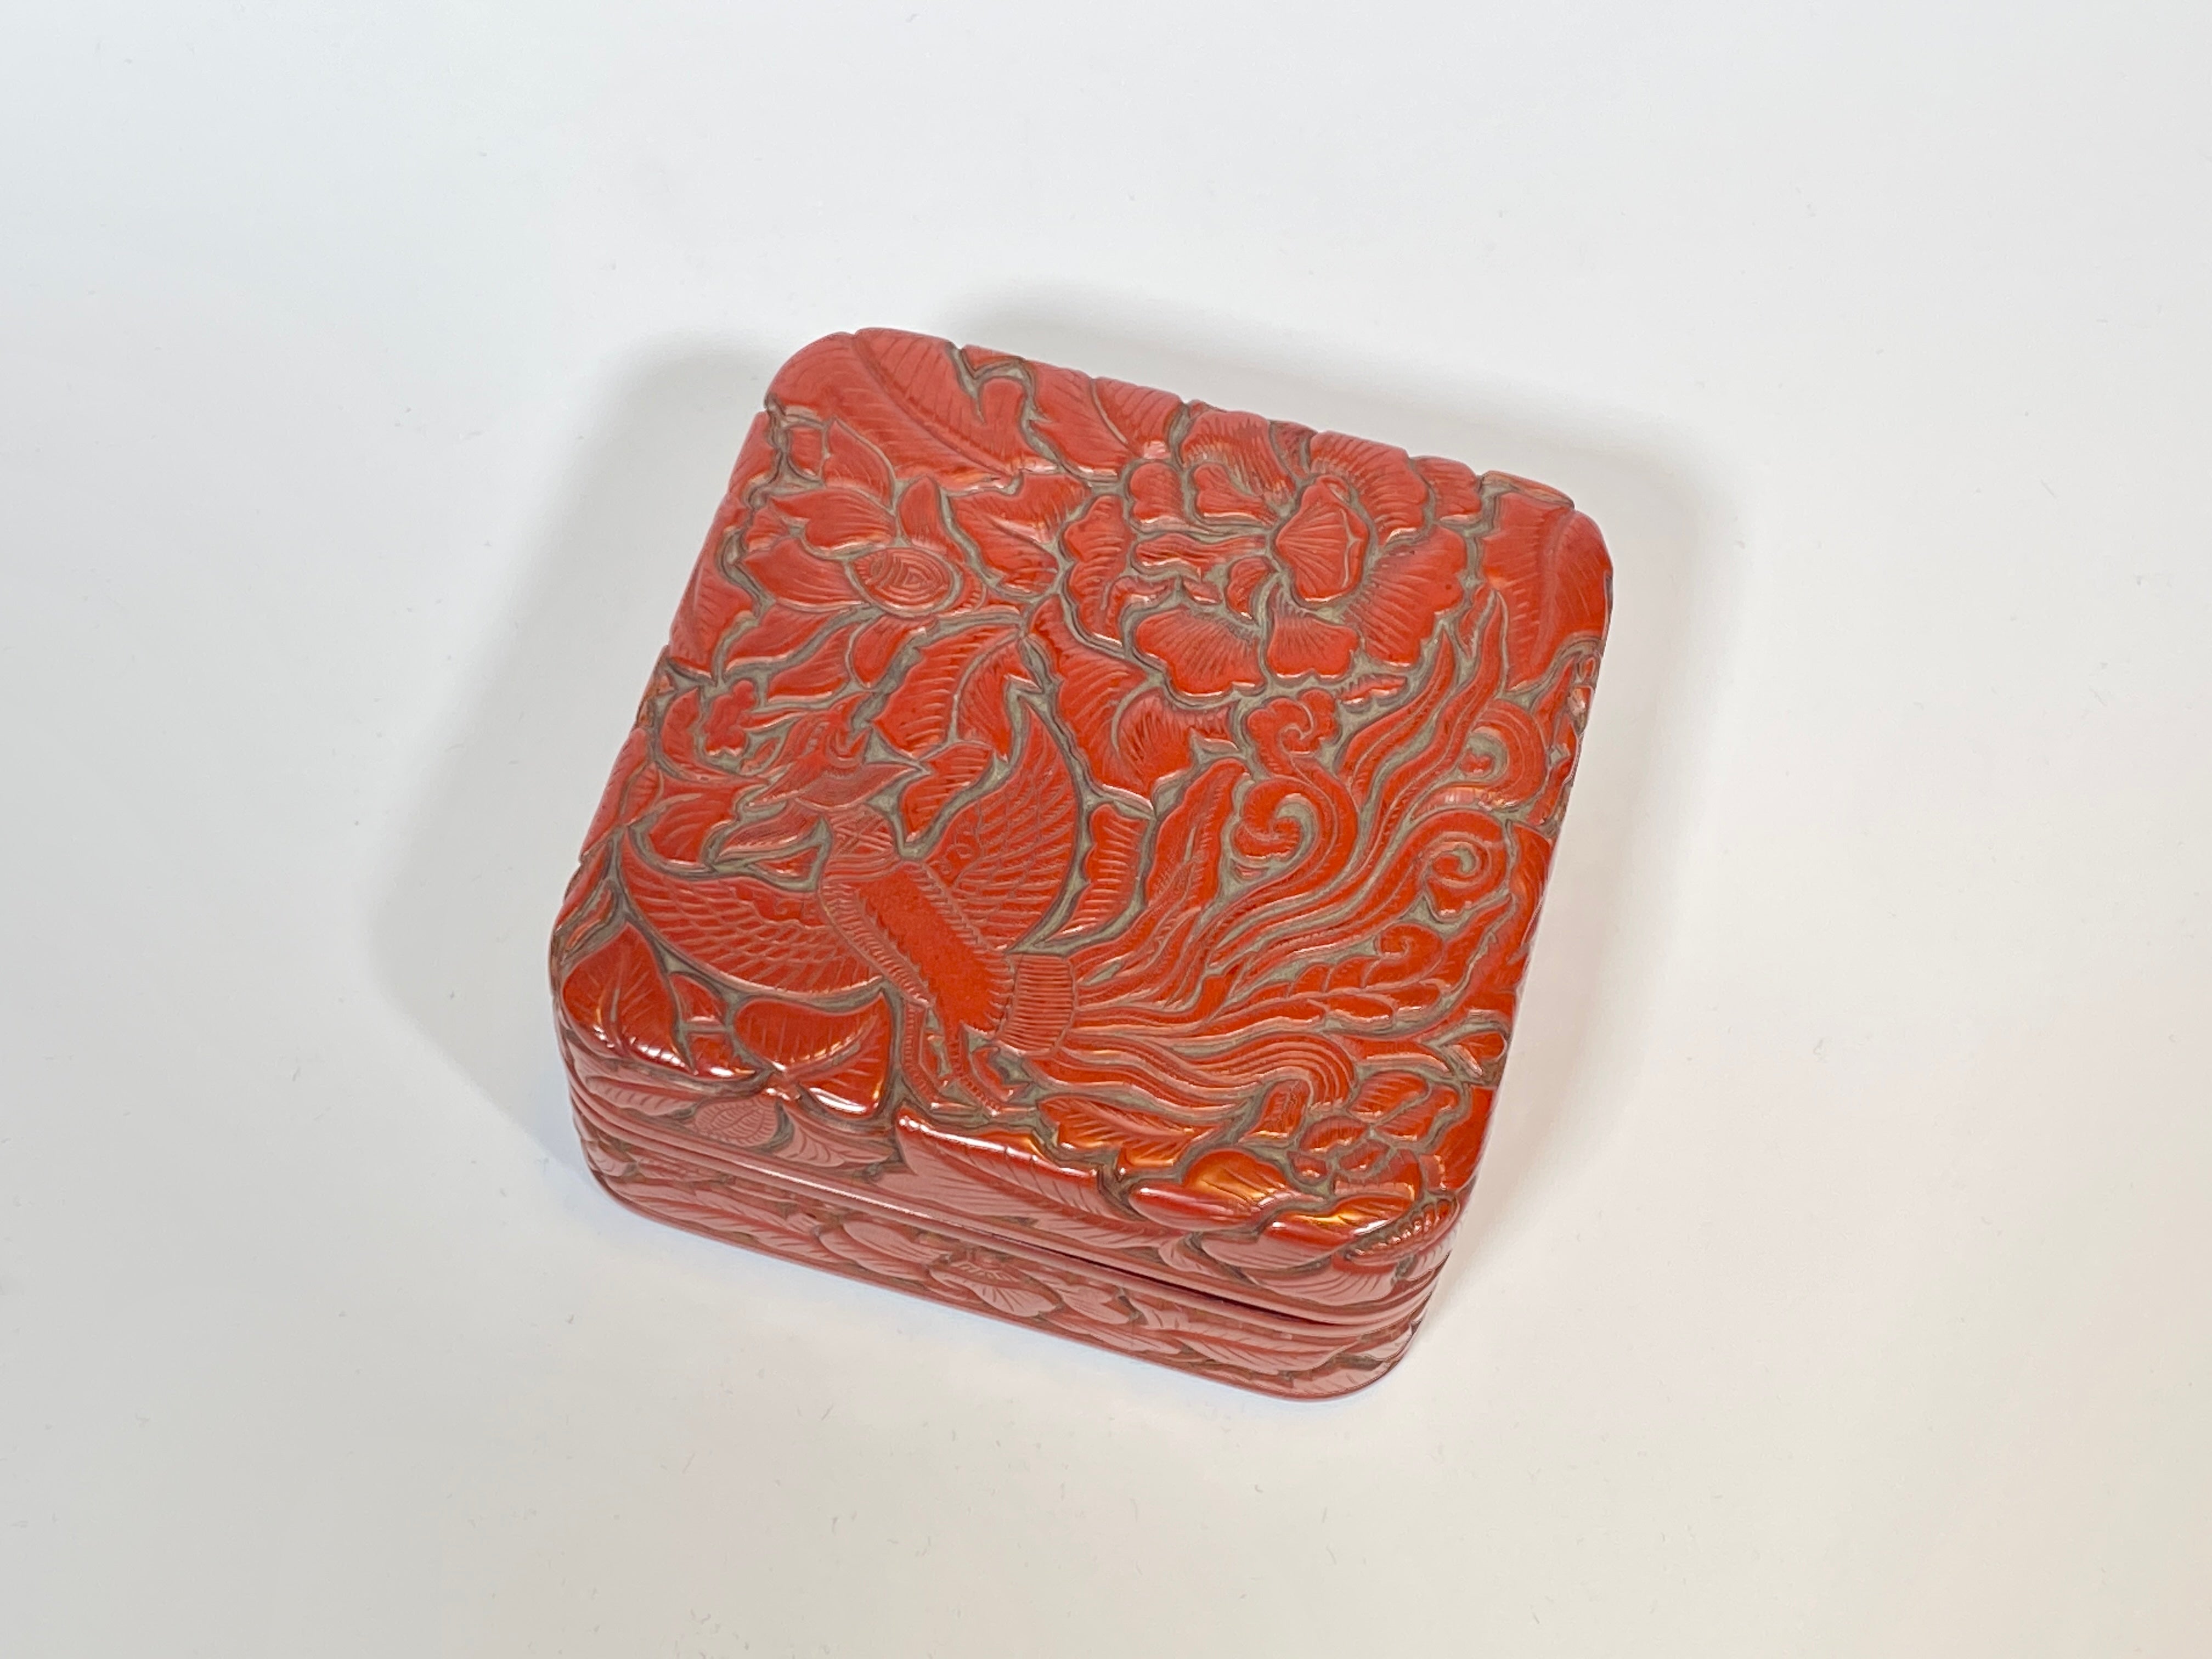 堆朱鳳凰四方箱 Red lacquer box with design of phoenix and flowers